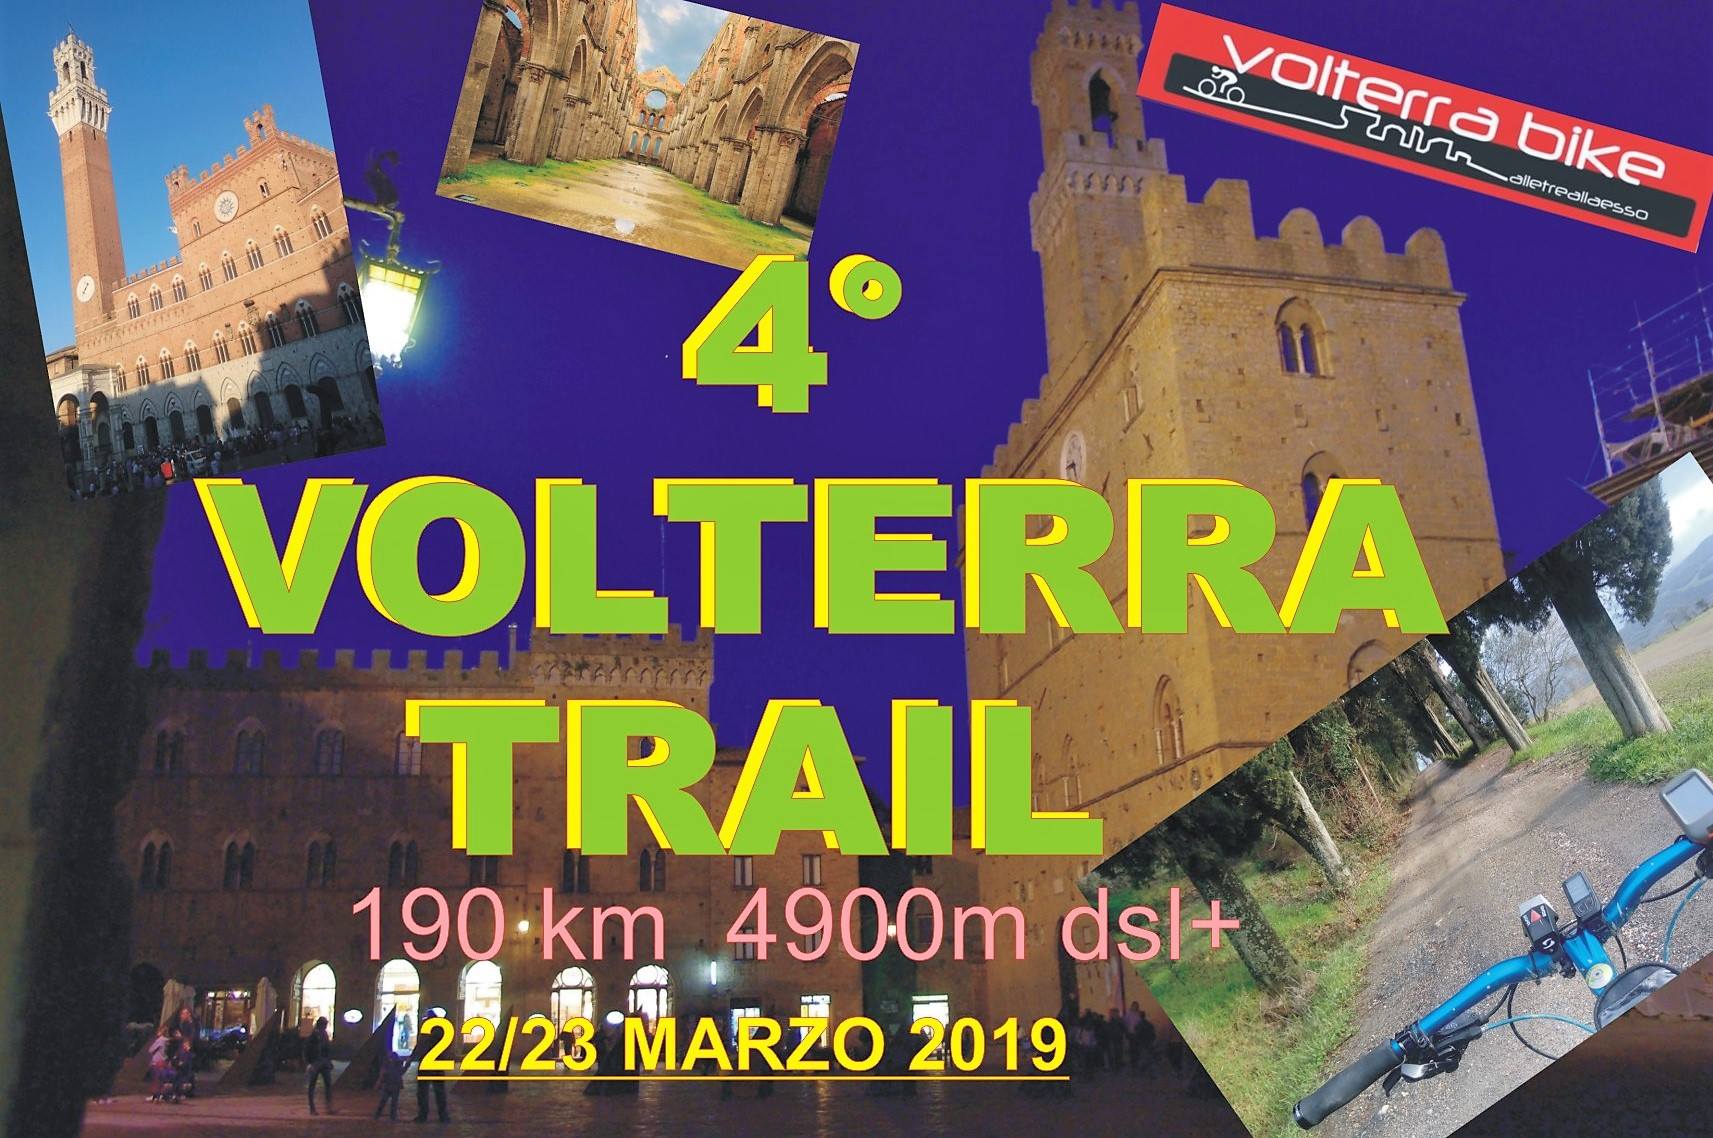 Volterra Trail